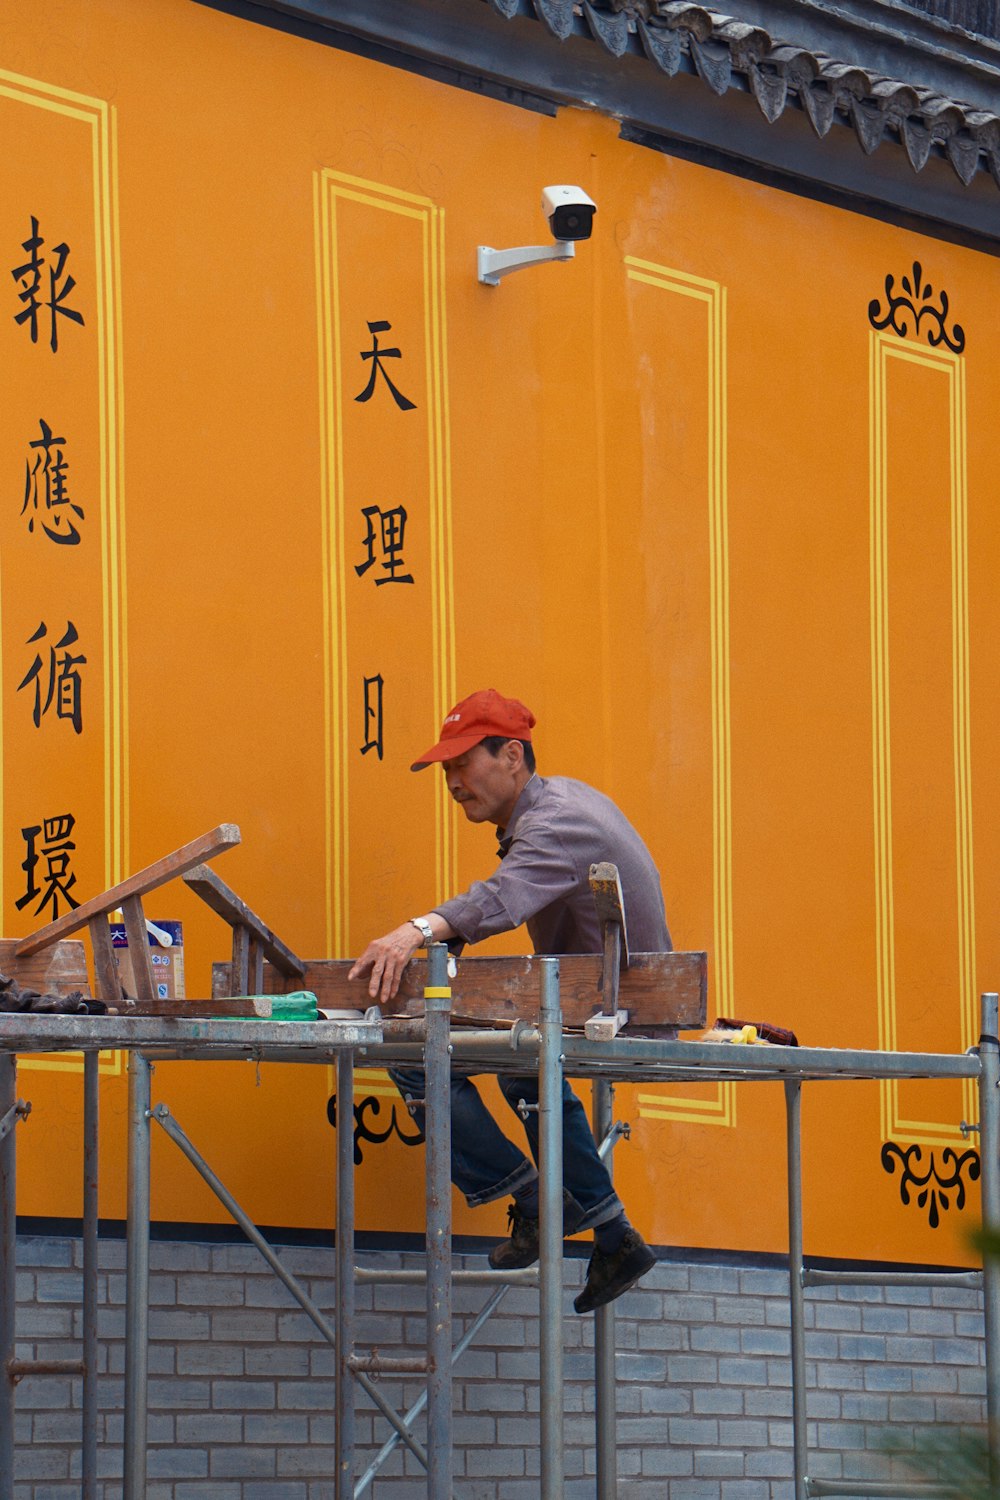 man in grey long sleeve shirt and orange cap sitting on blue metal bar